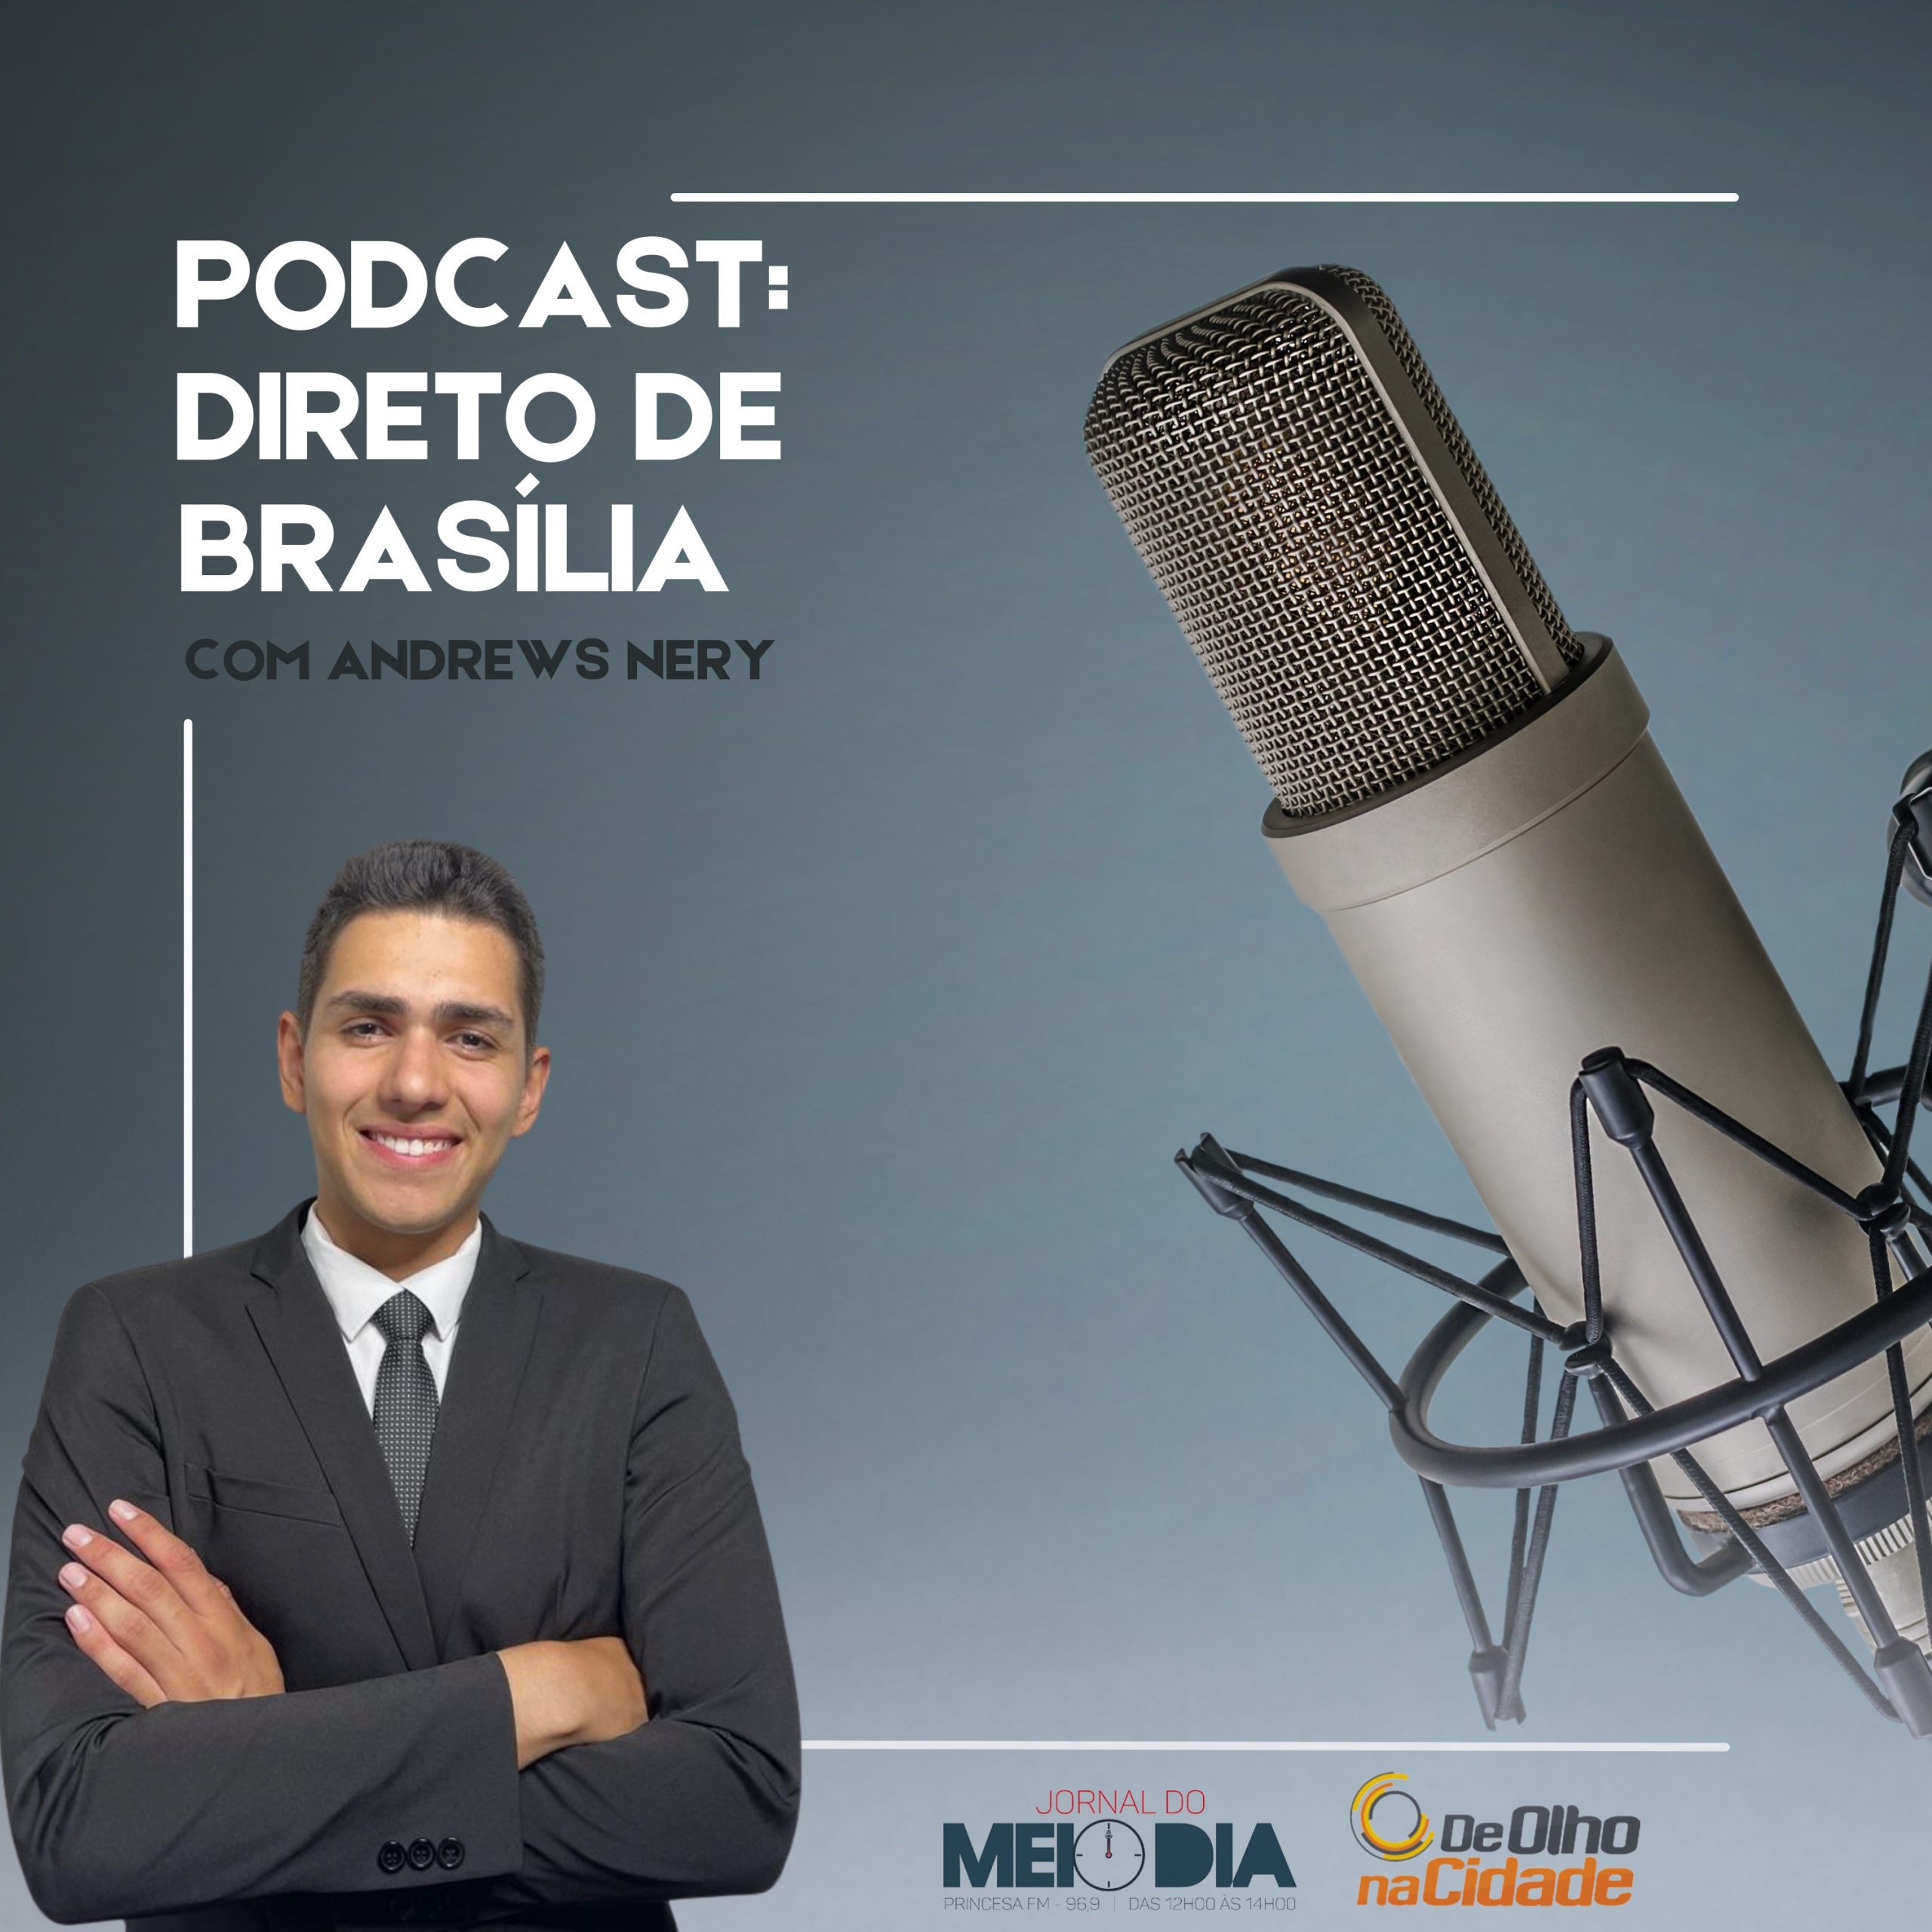 Podcast: Direto de Brasília com Andrews Nery (22/03) 